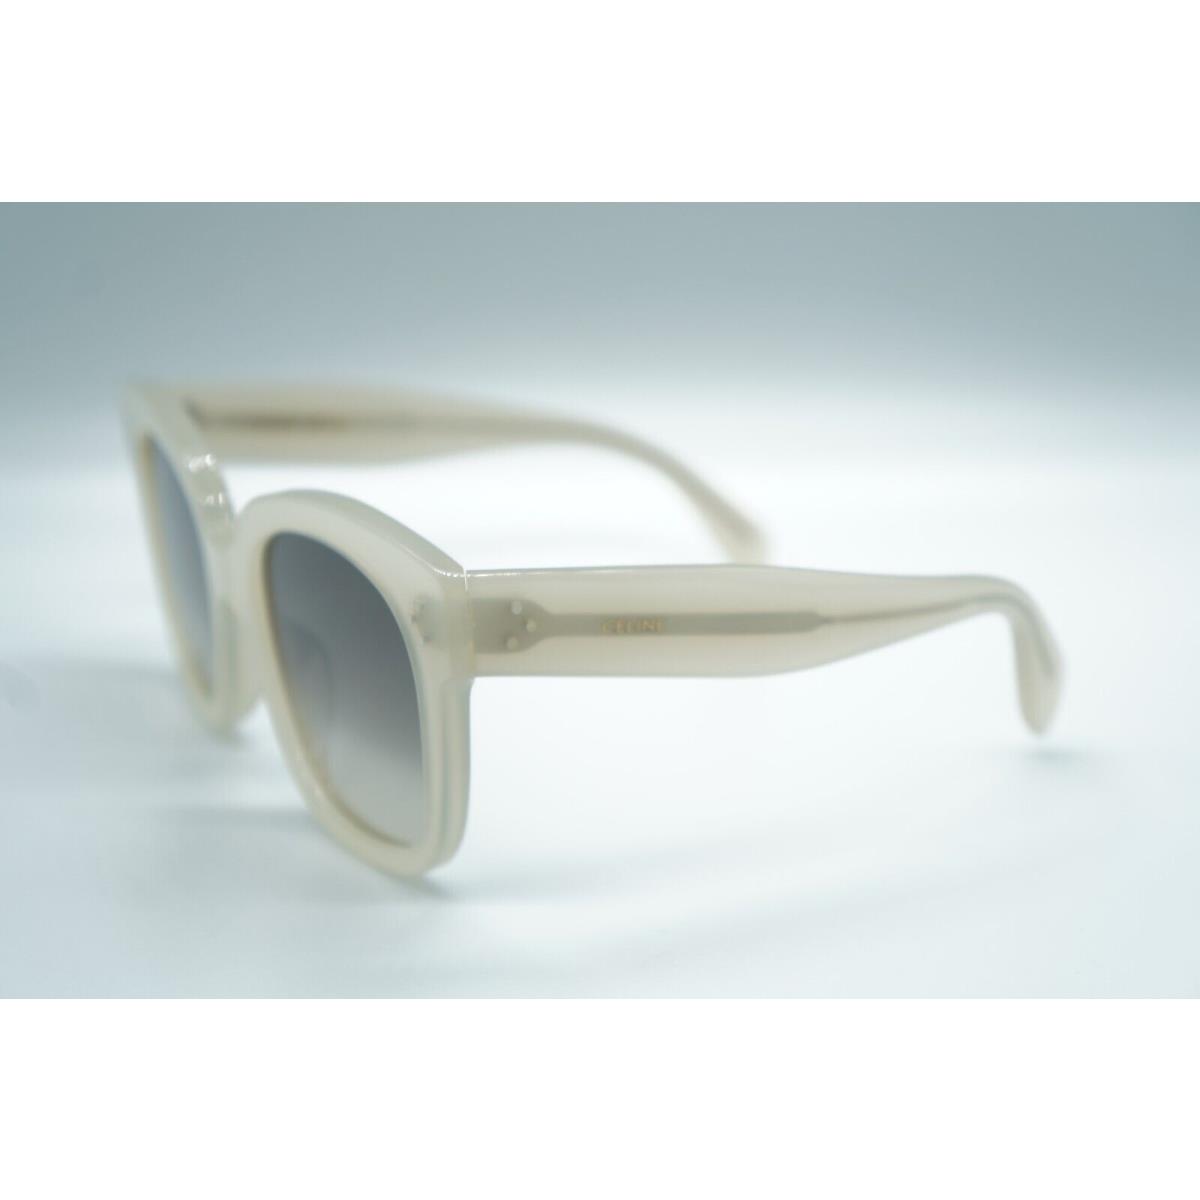 Celine eyeglasses  - Frame: White 0